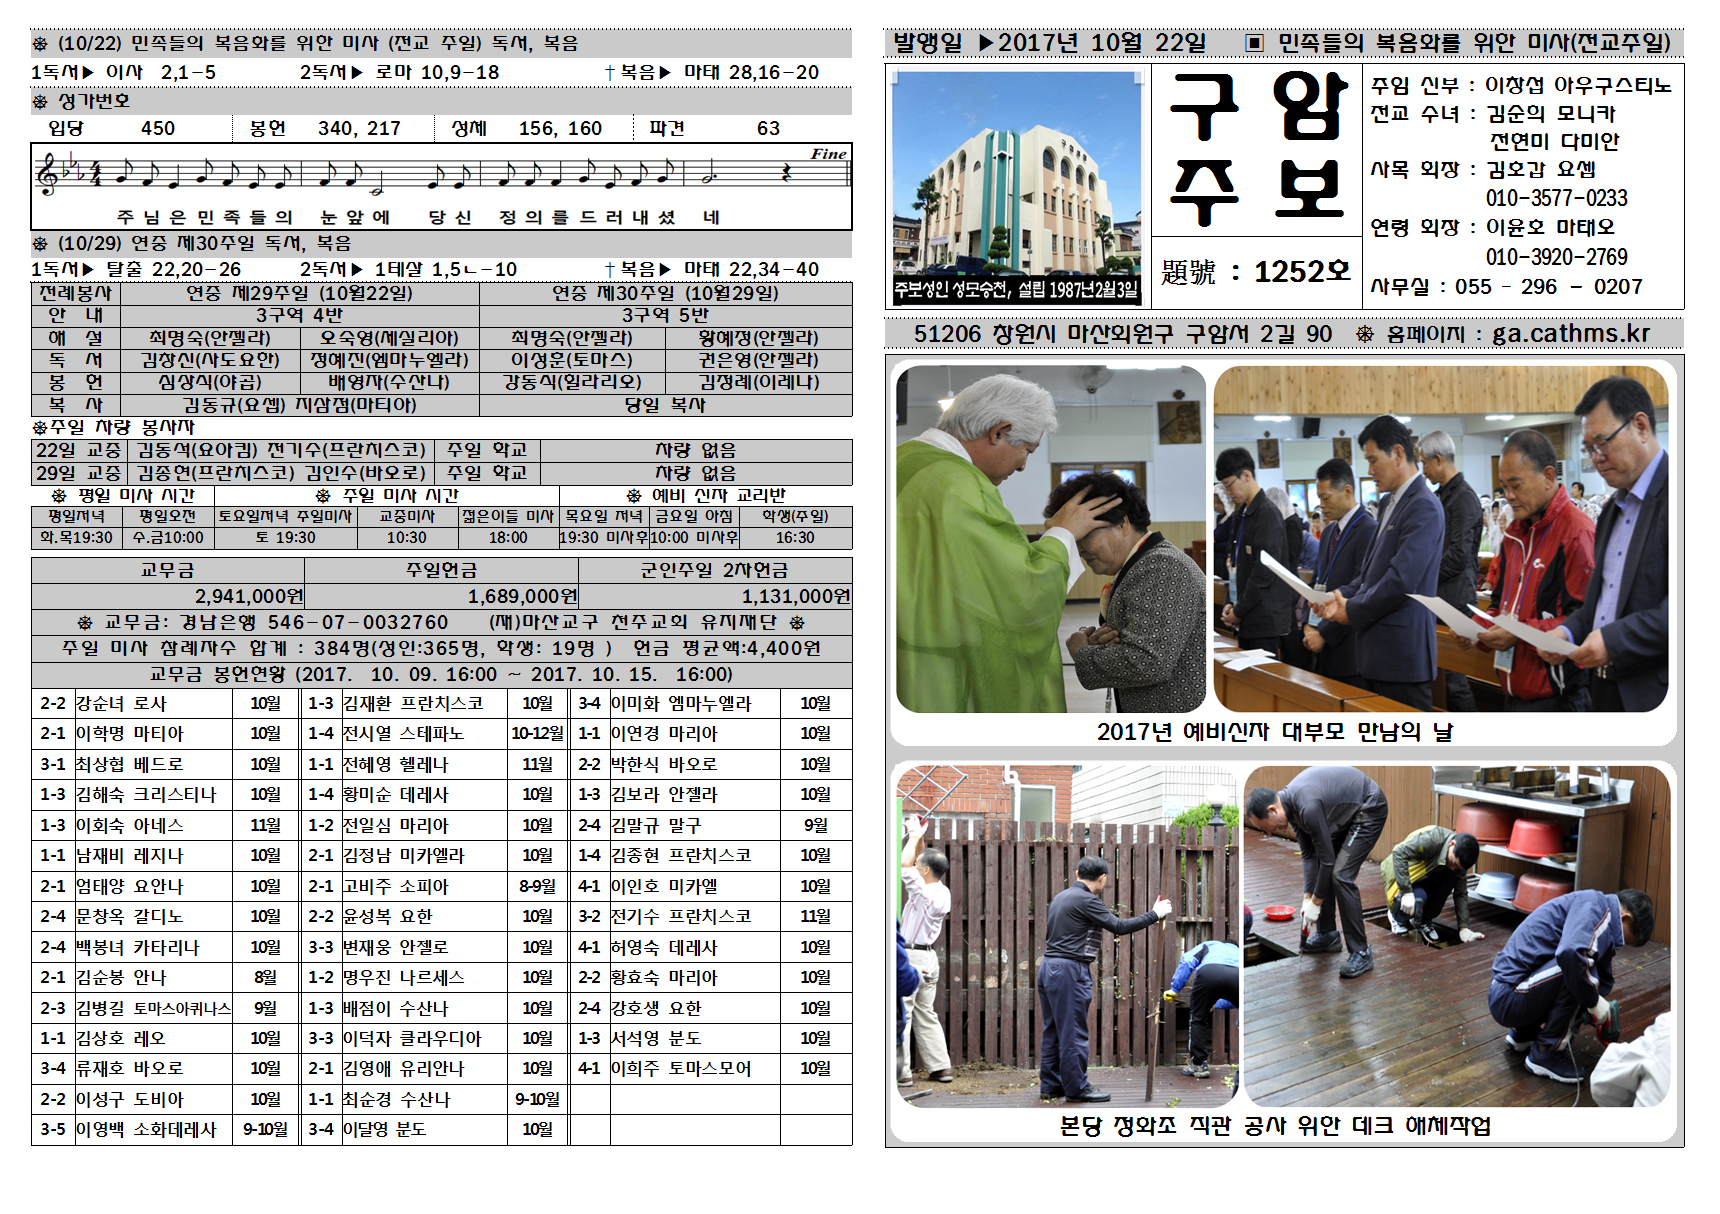 구암주보1252호_민족들의 복음화를 위한 미사(전교주일)001.png